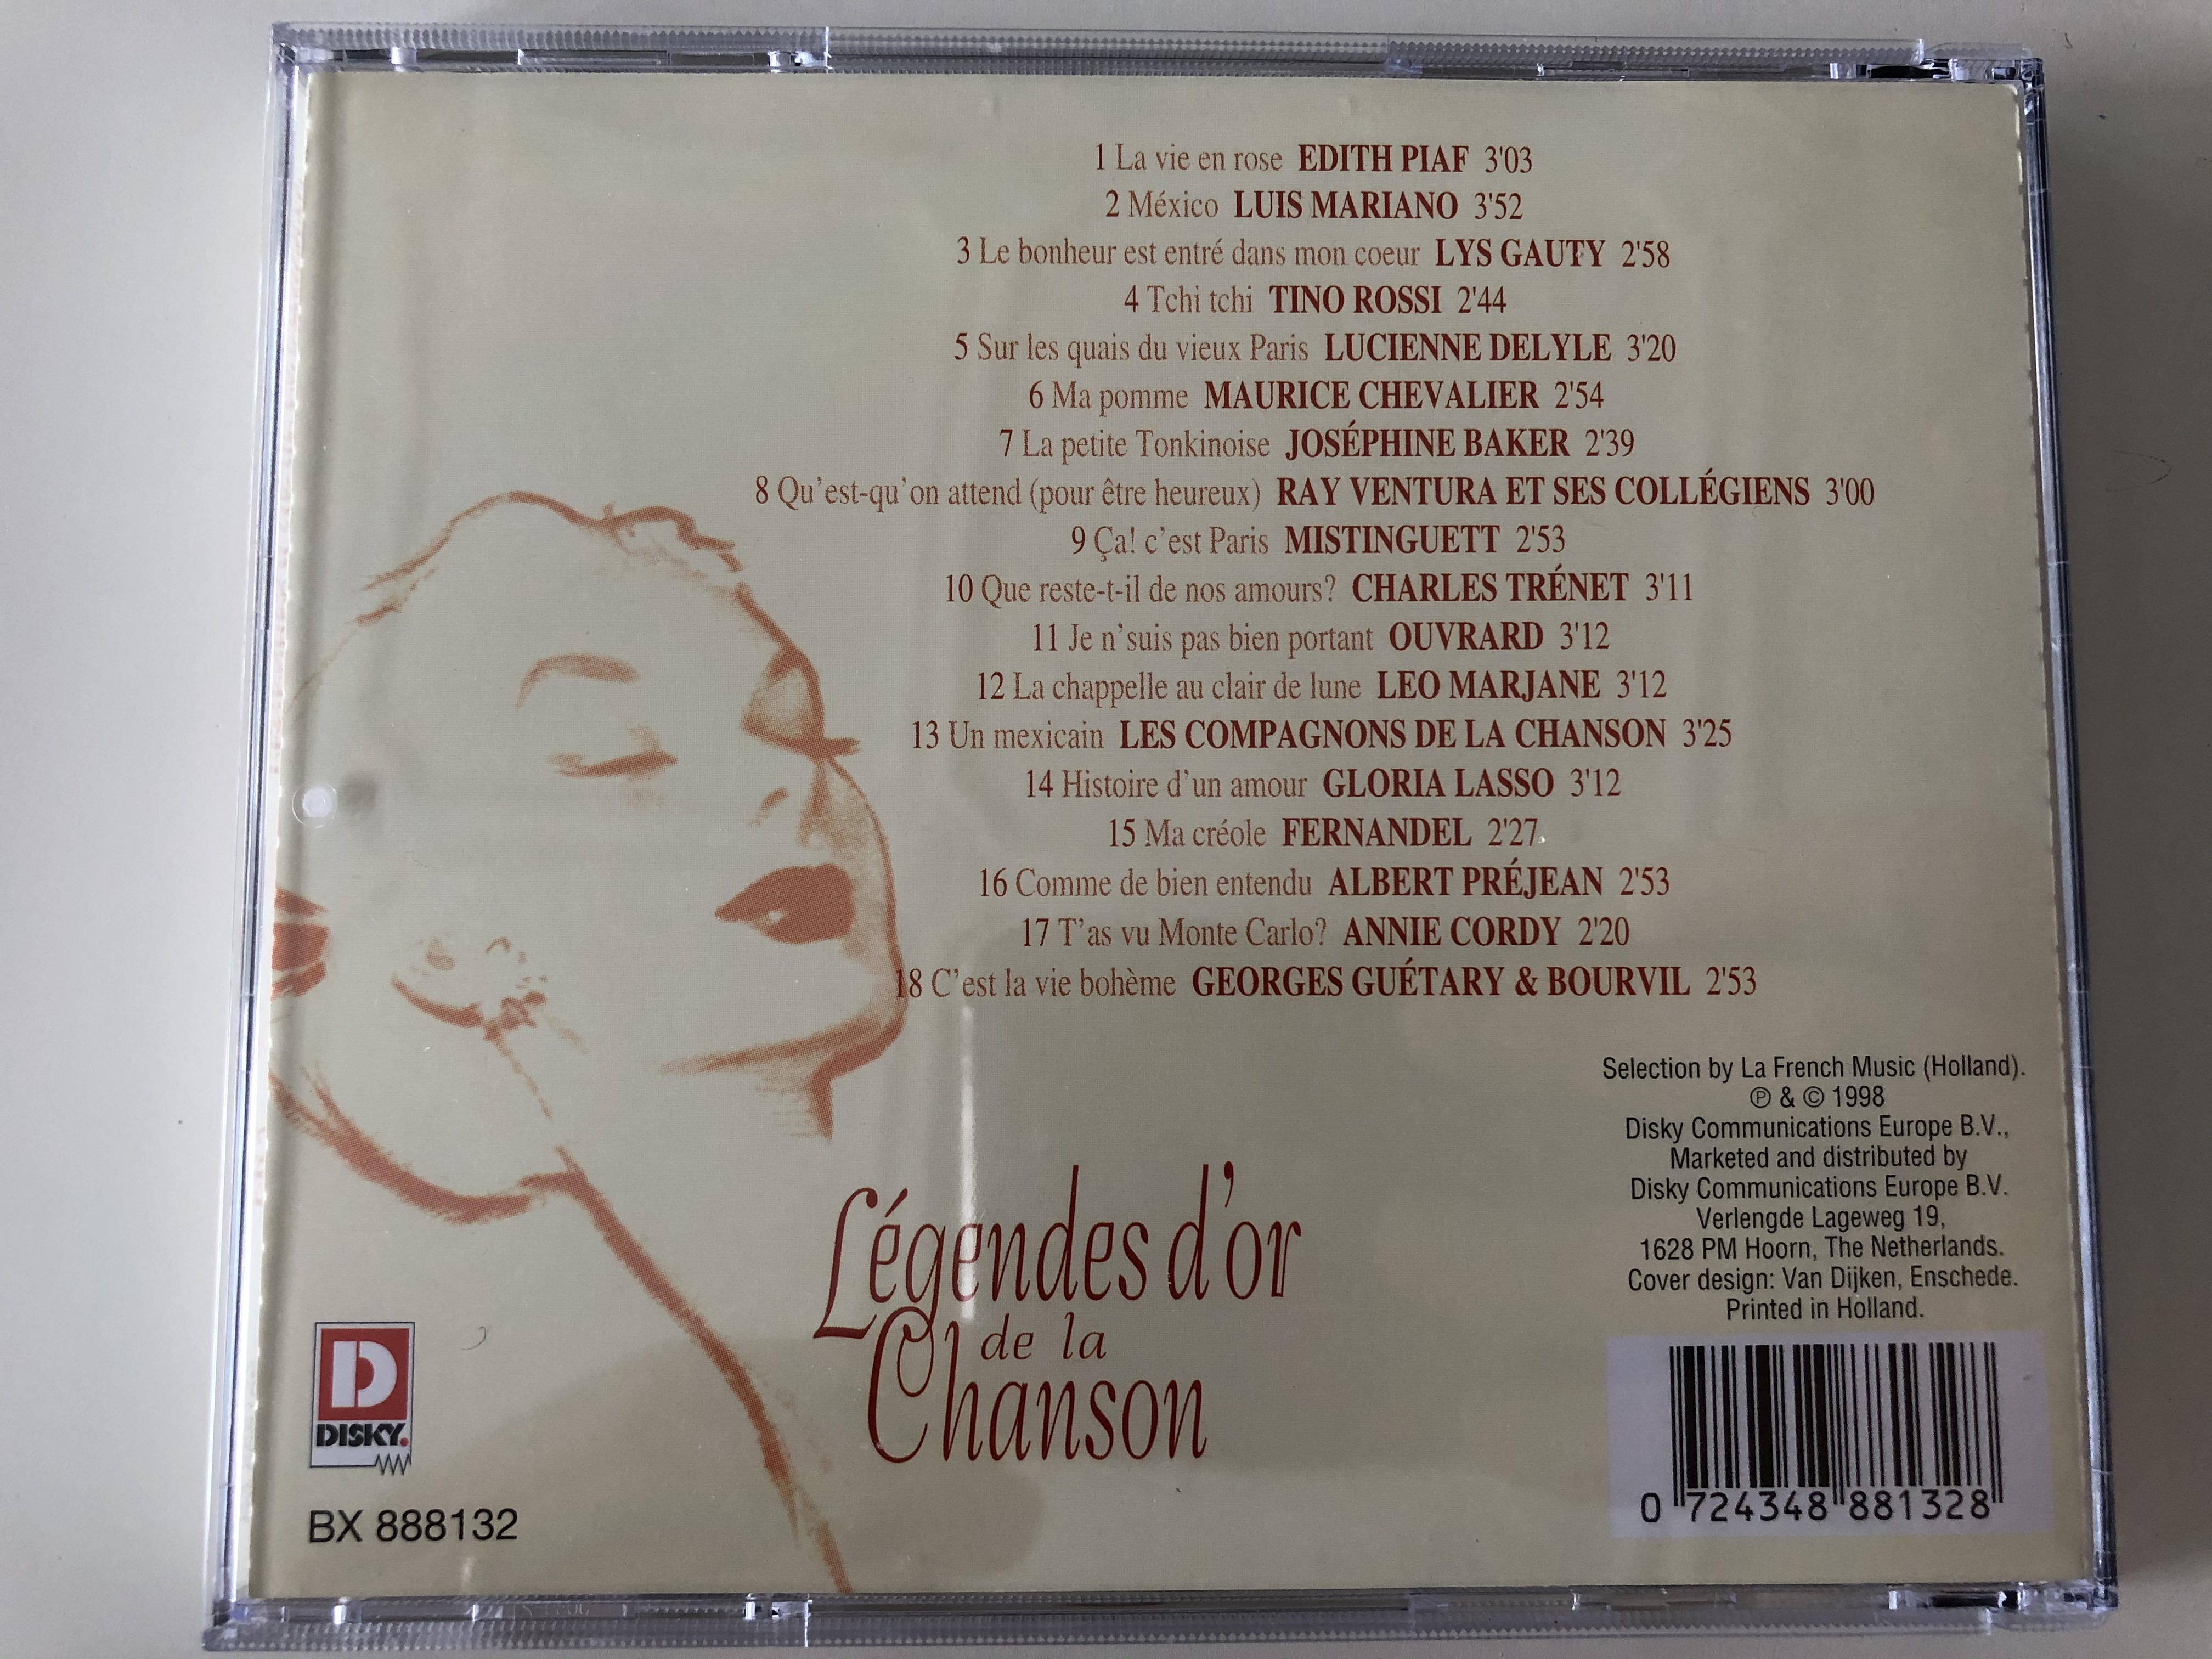 l-gendes-d-or-de-la-chanson-lys-gauty-lucienne-delyle-mistinguett-leo-marjane-gloria-lasso-cd-3-disky-audio-cd-1998-bx-888132-4-.jpg